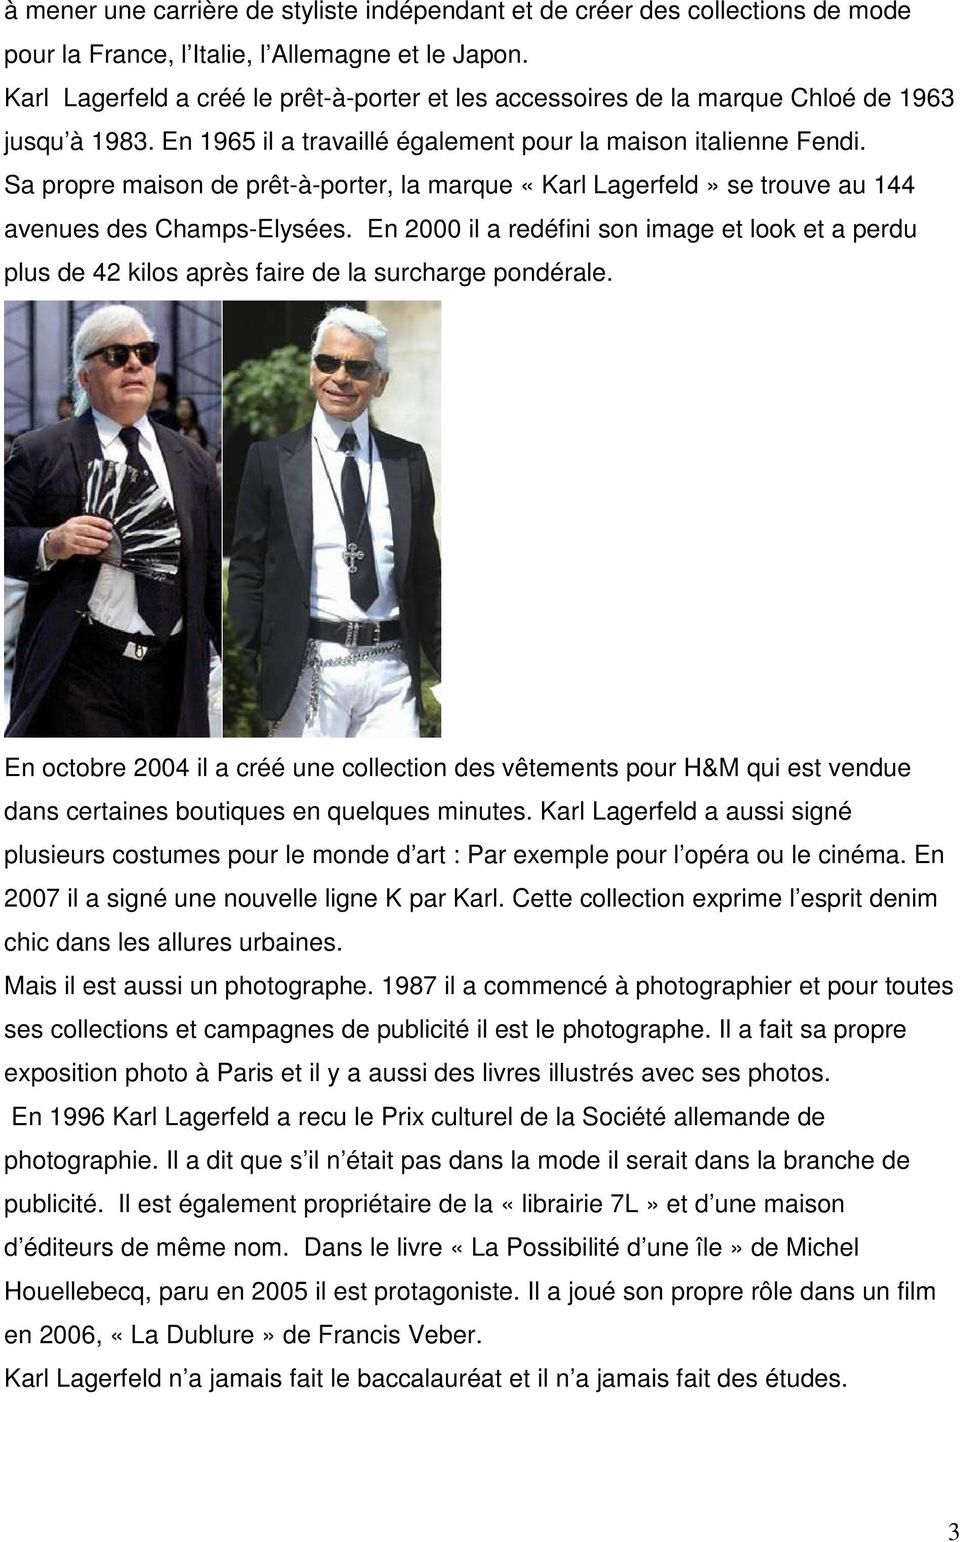 Sa propre maison de prêt-à-porter, la marque «Karl Lagerfeld» se trouve au 144 avenues des Champs-Elysées.